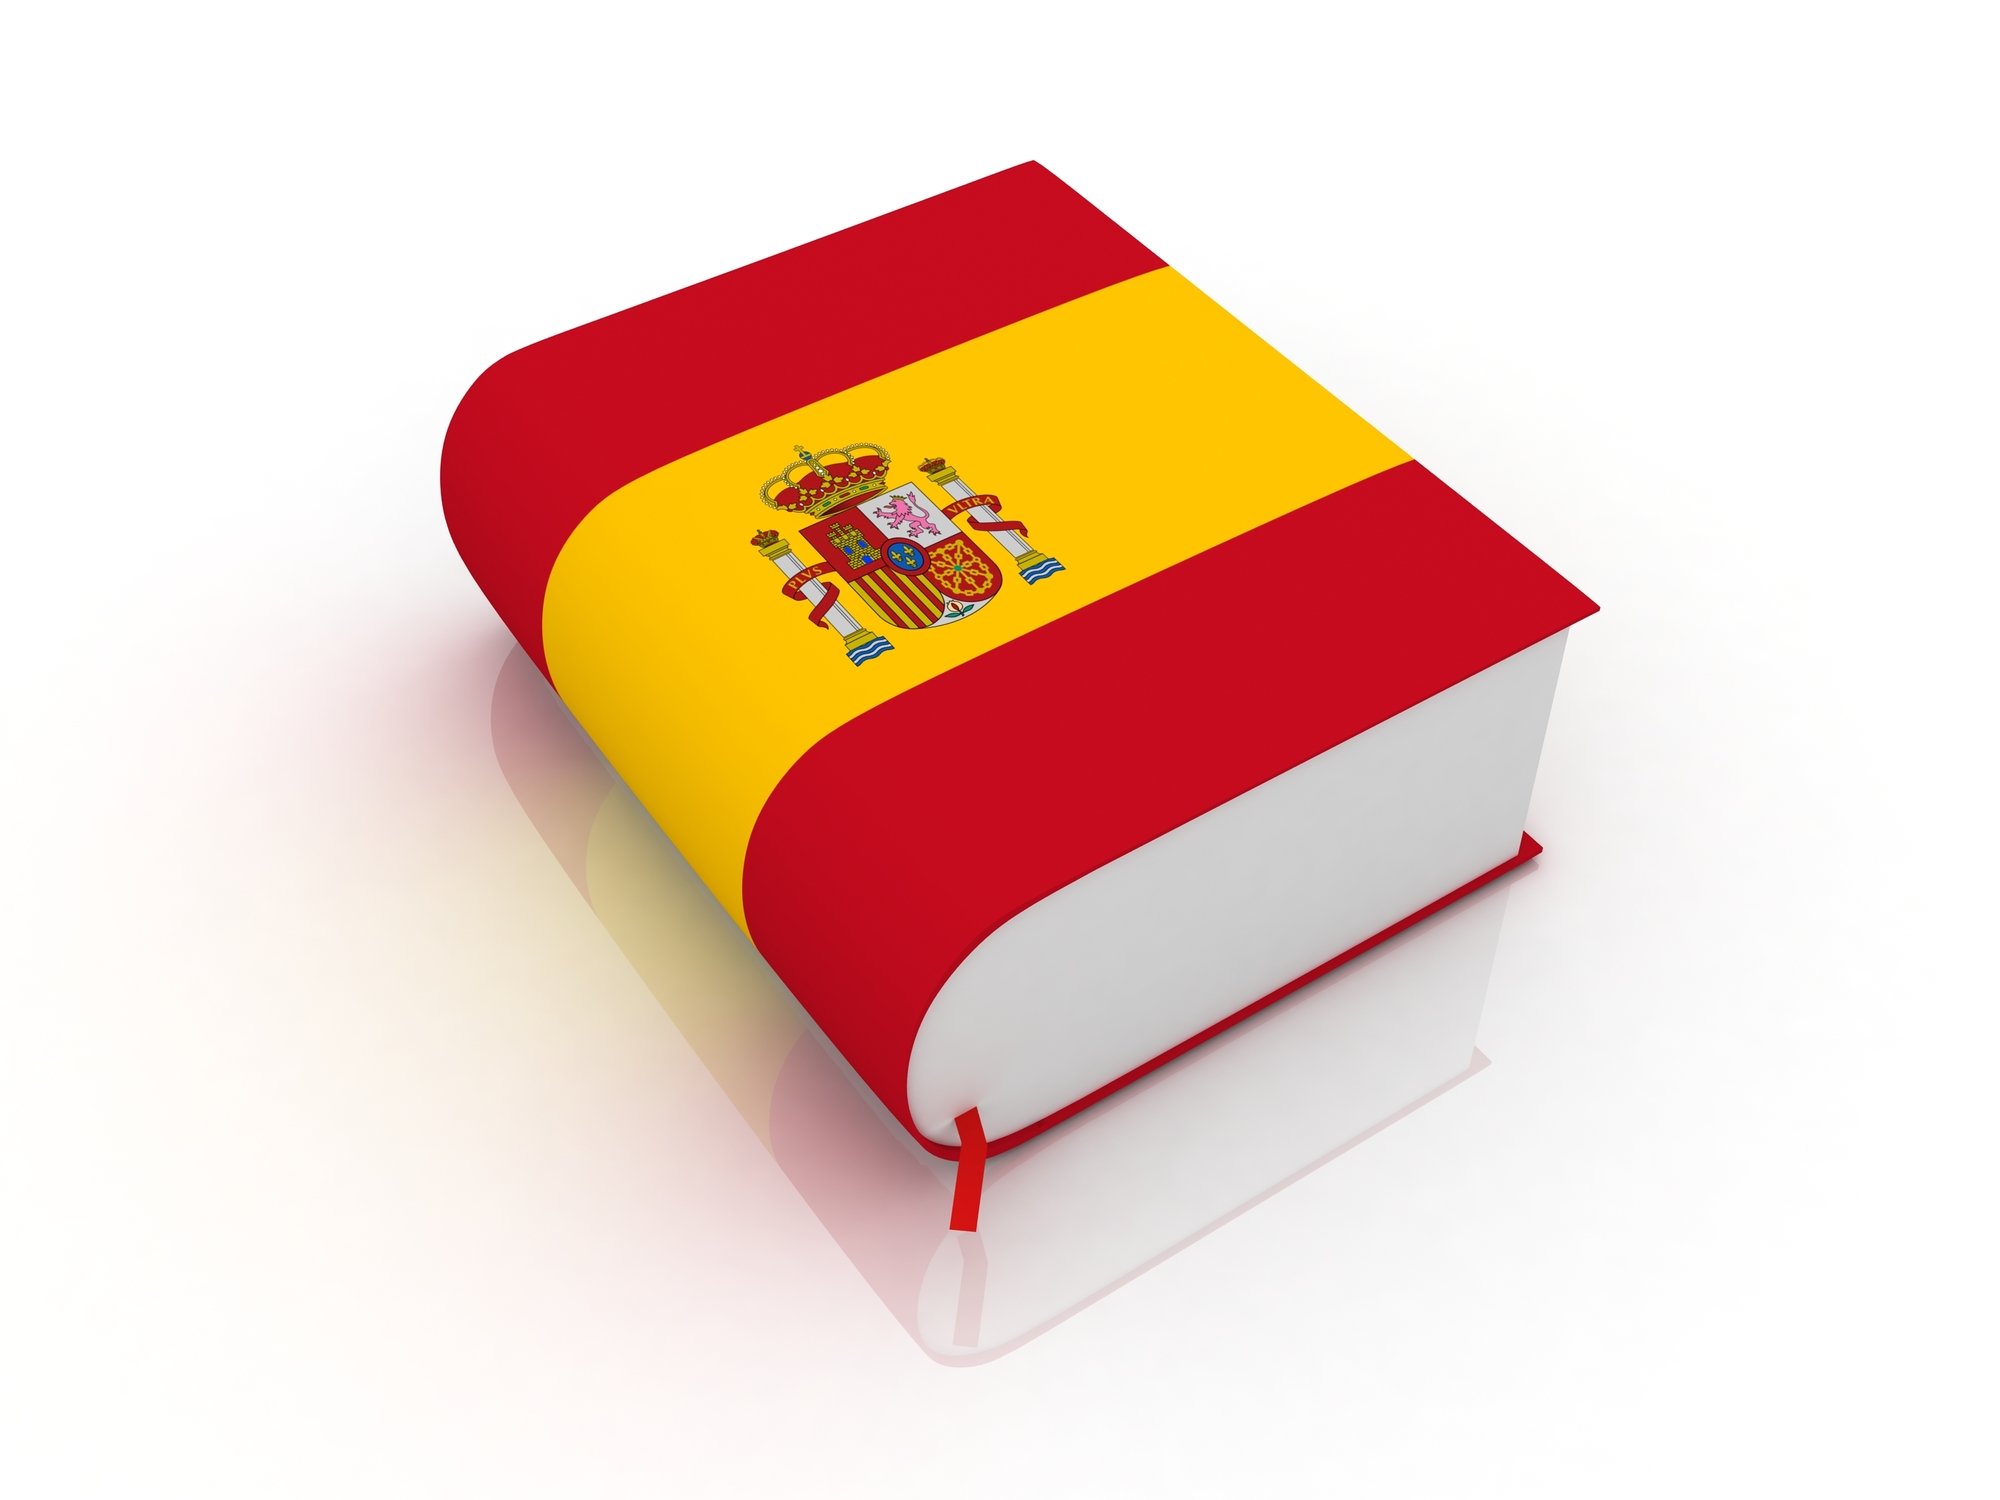 Empresa de traduções profissionais para catalão